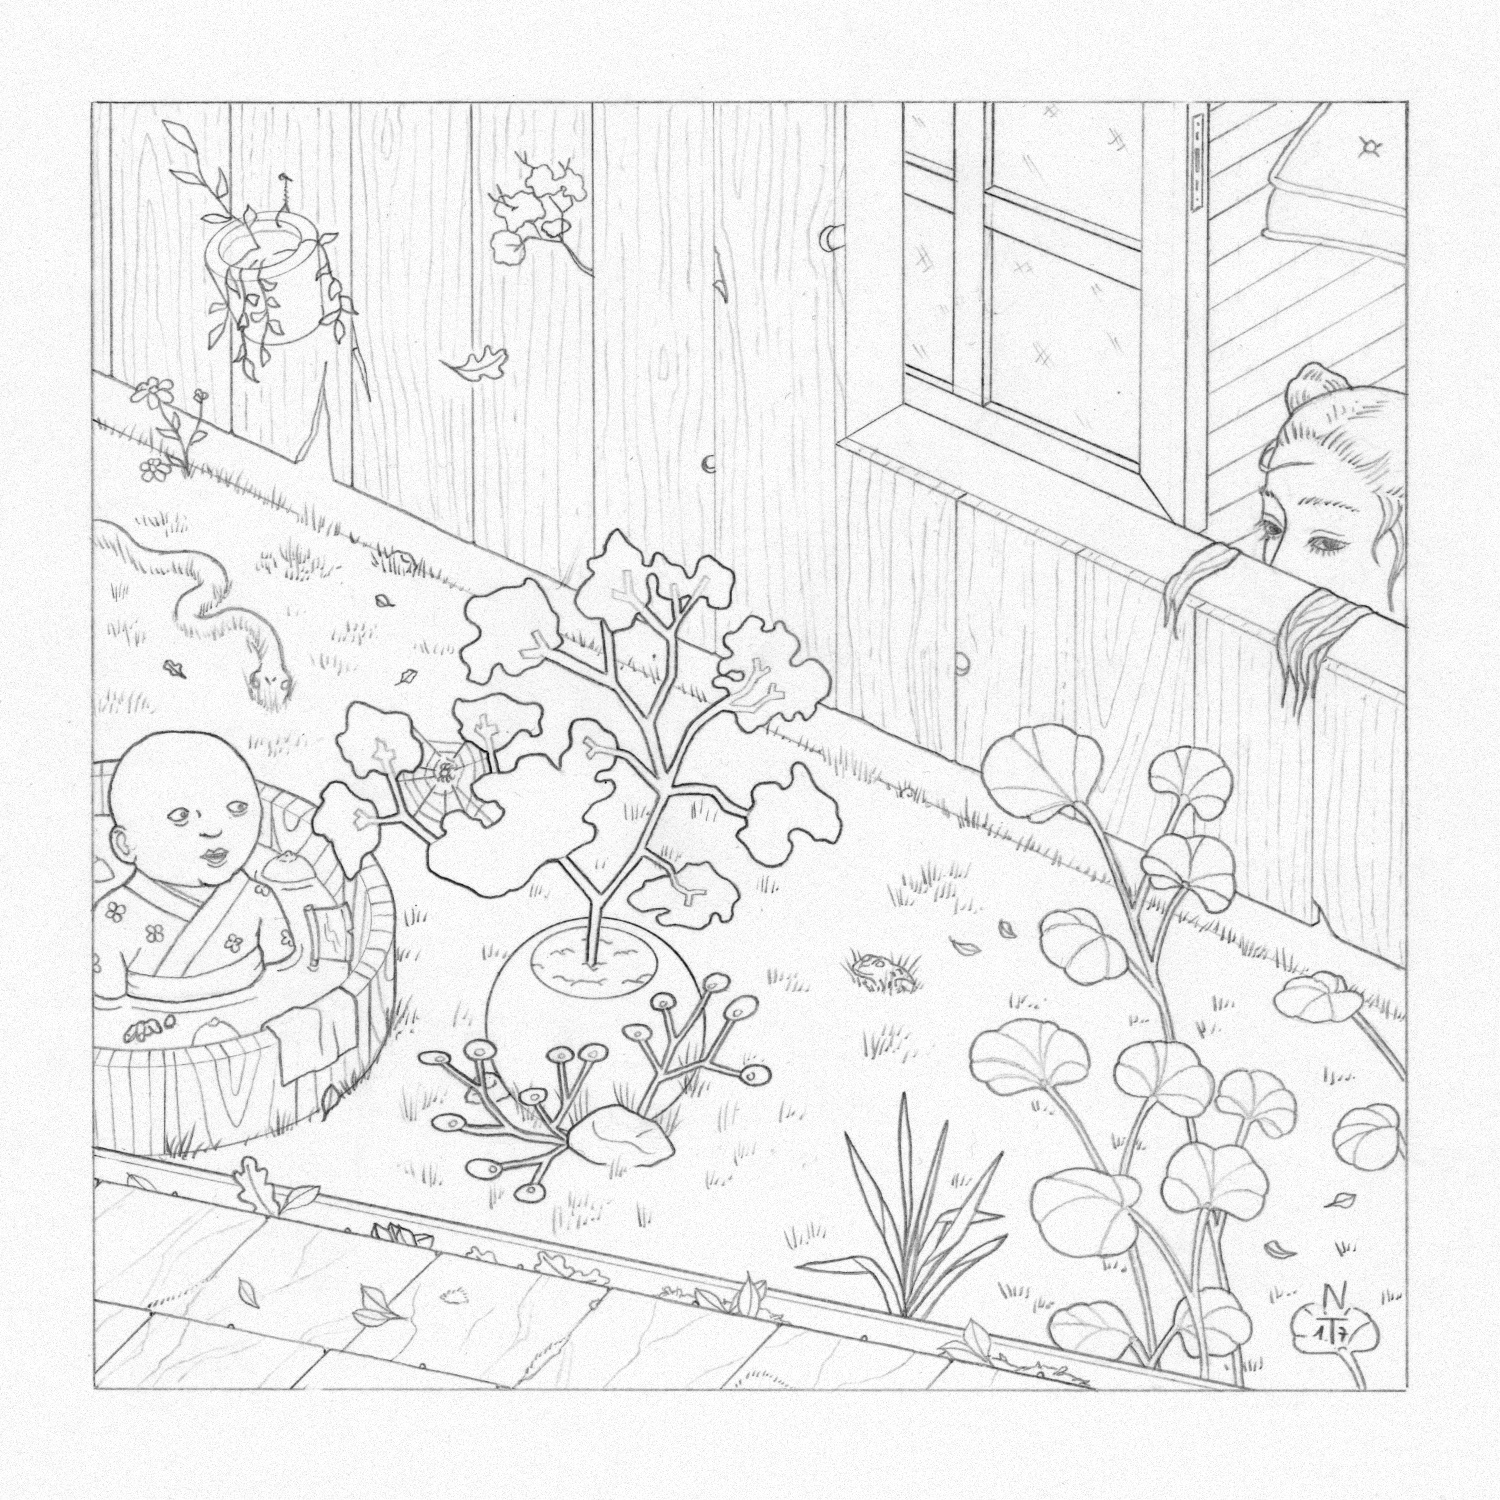 nicolas-trillaud-illustration-le-bebe-dans-bain-sketch